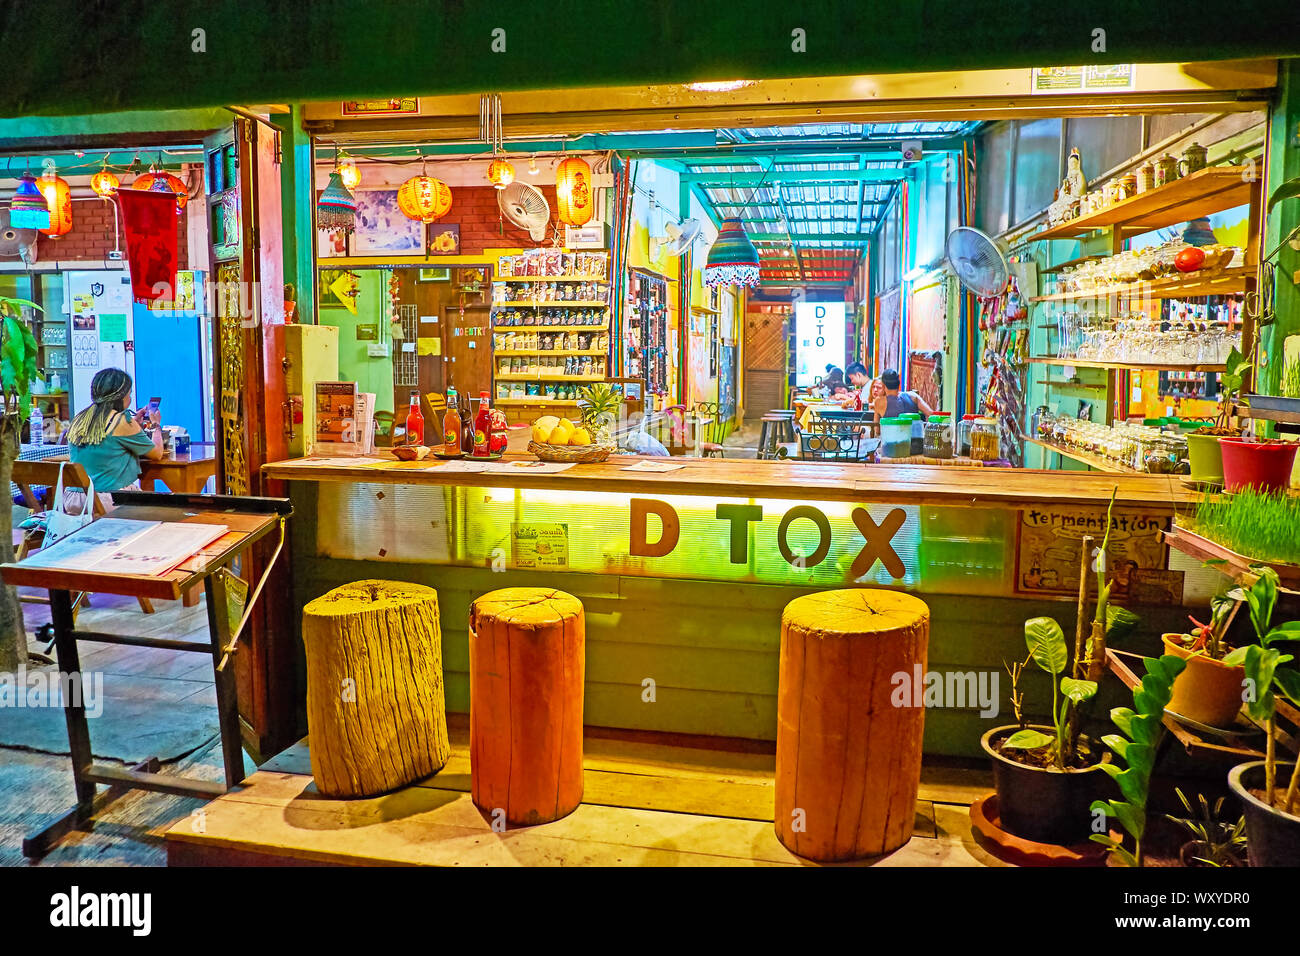 PAI, THAÏLANDE - Mai 5, 2019 : l'agréable petit bar avec comptoir utdoor avec log se trouve, situé dans la rue piétonne du Marché de nuit, le 5 mai dans la région de Pai Banque D'Images